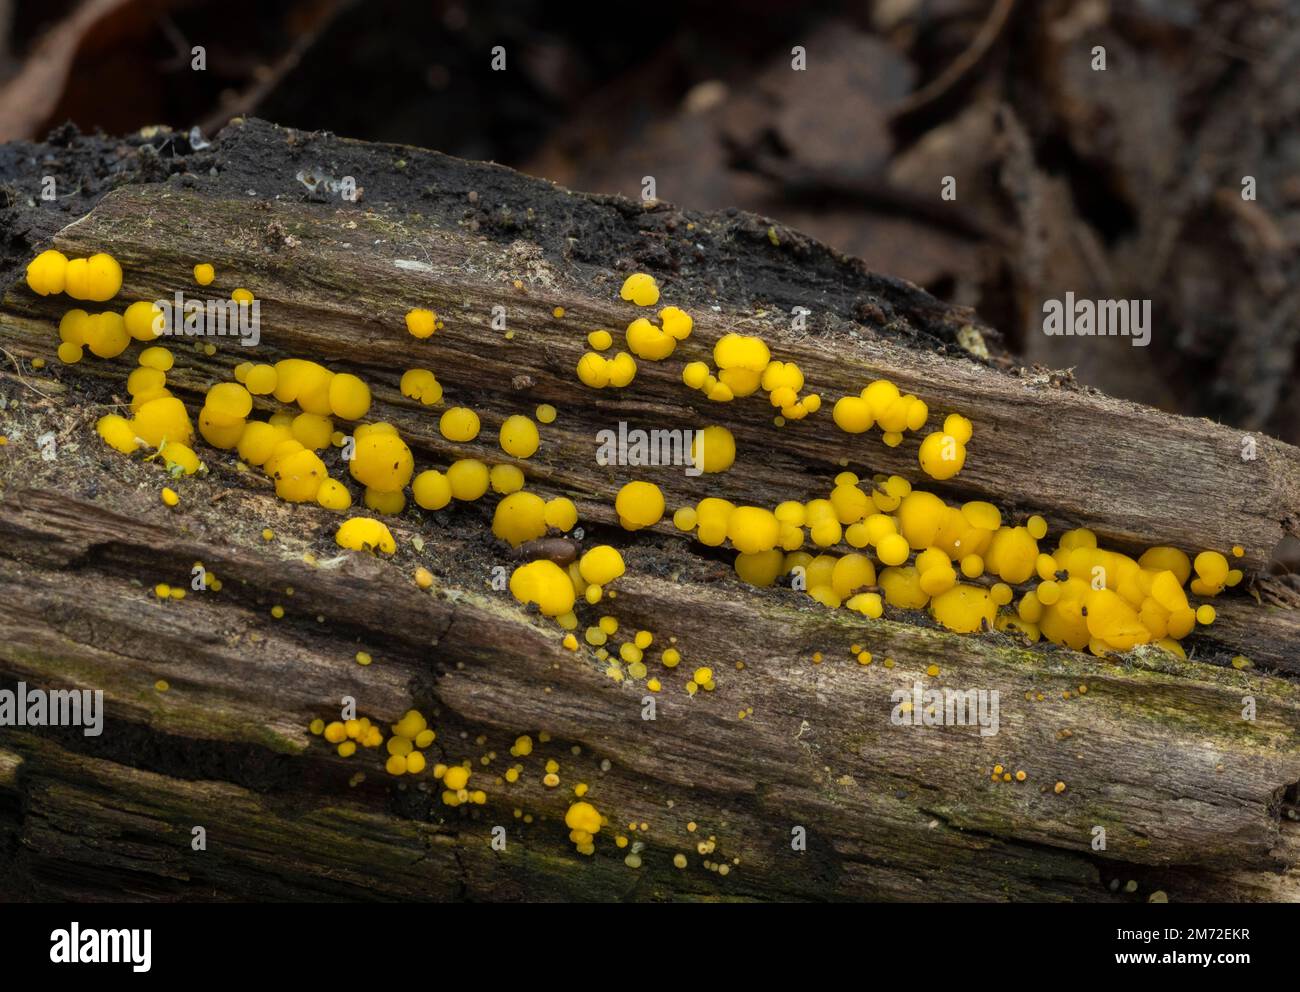 Un morceau de log pourri parsemé des corps de fructification jaune vif du champignon de la fée jaune (Biosorella citrina) Banque D'Images